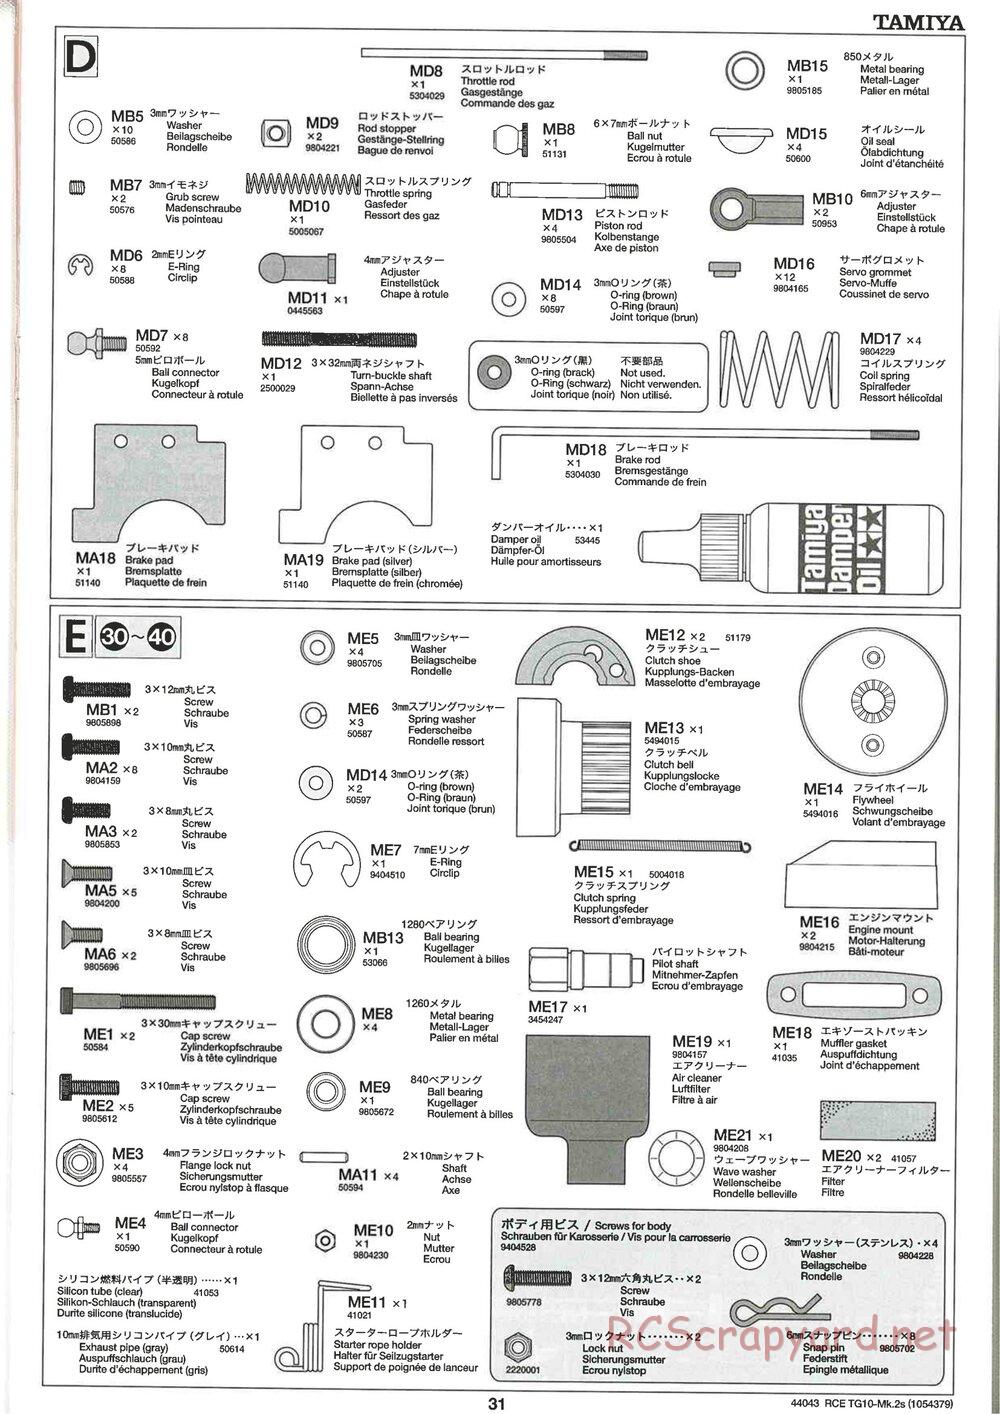 Tamiya - TG10 Mk.2s Chassis - Manual - Page 32